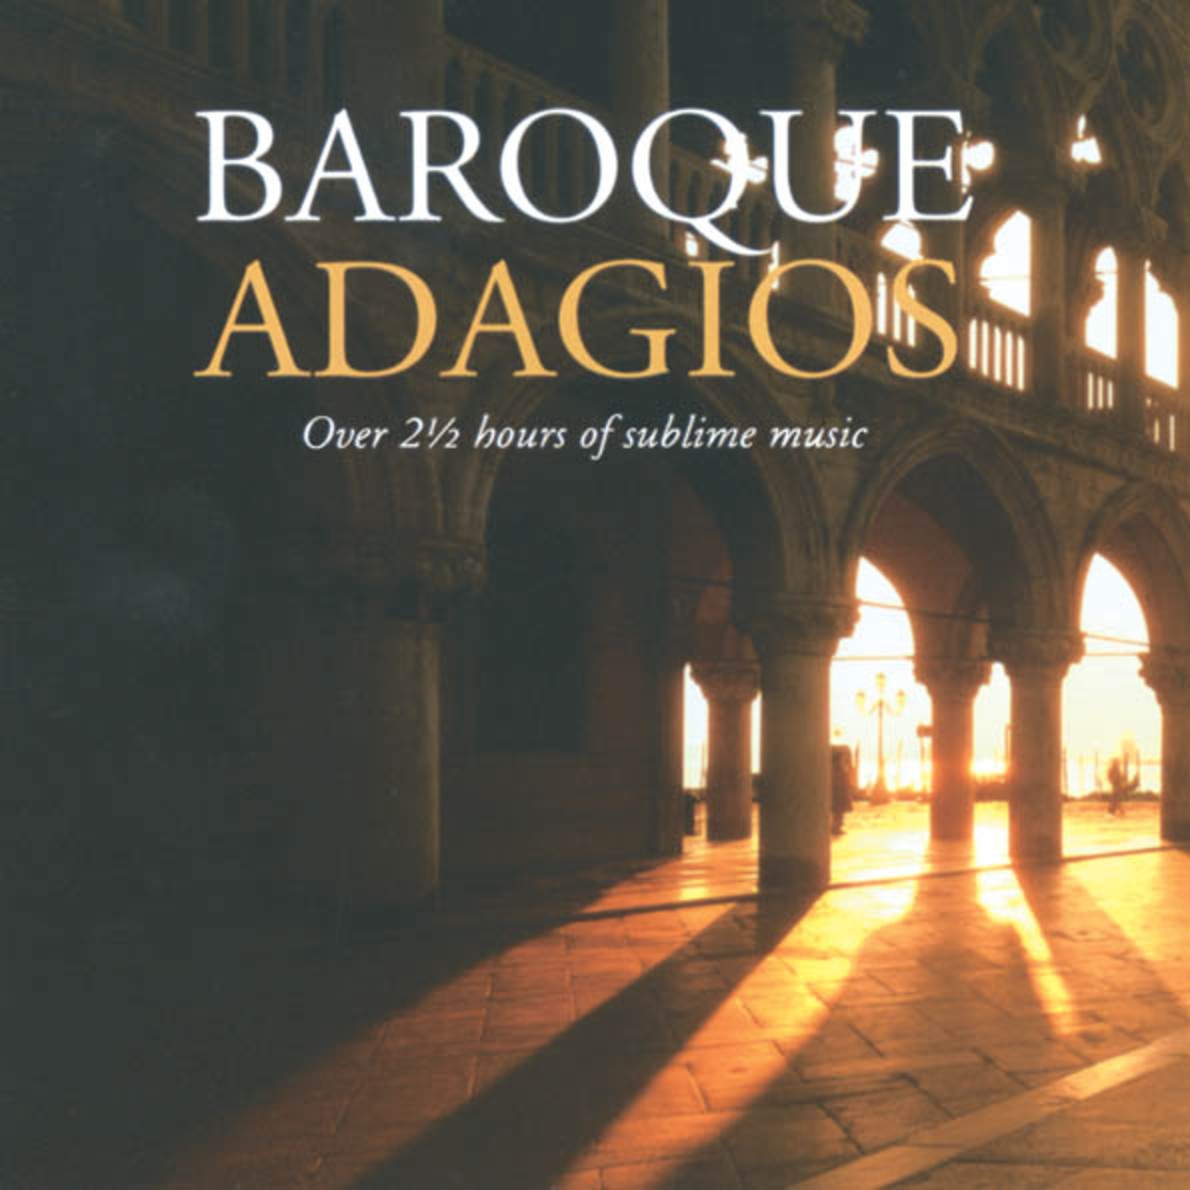 Arioso (Adagio in G) from Cantata BWV 156 (Arr. Lloyd Webber)